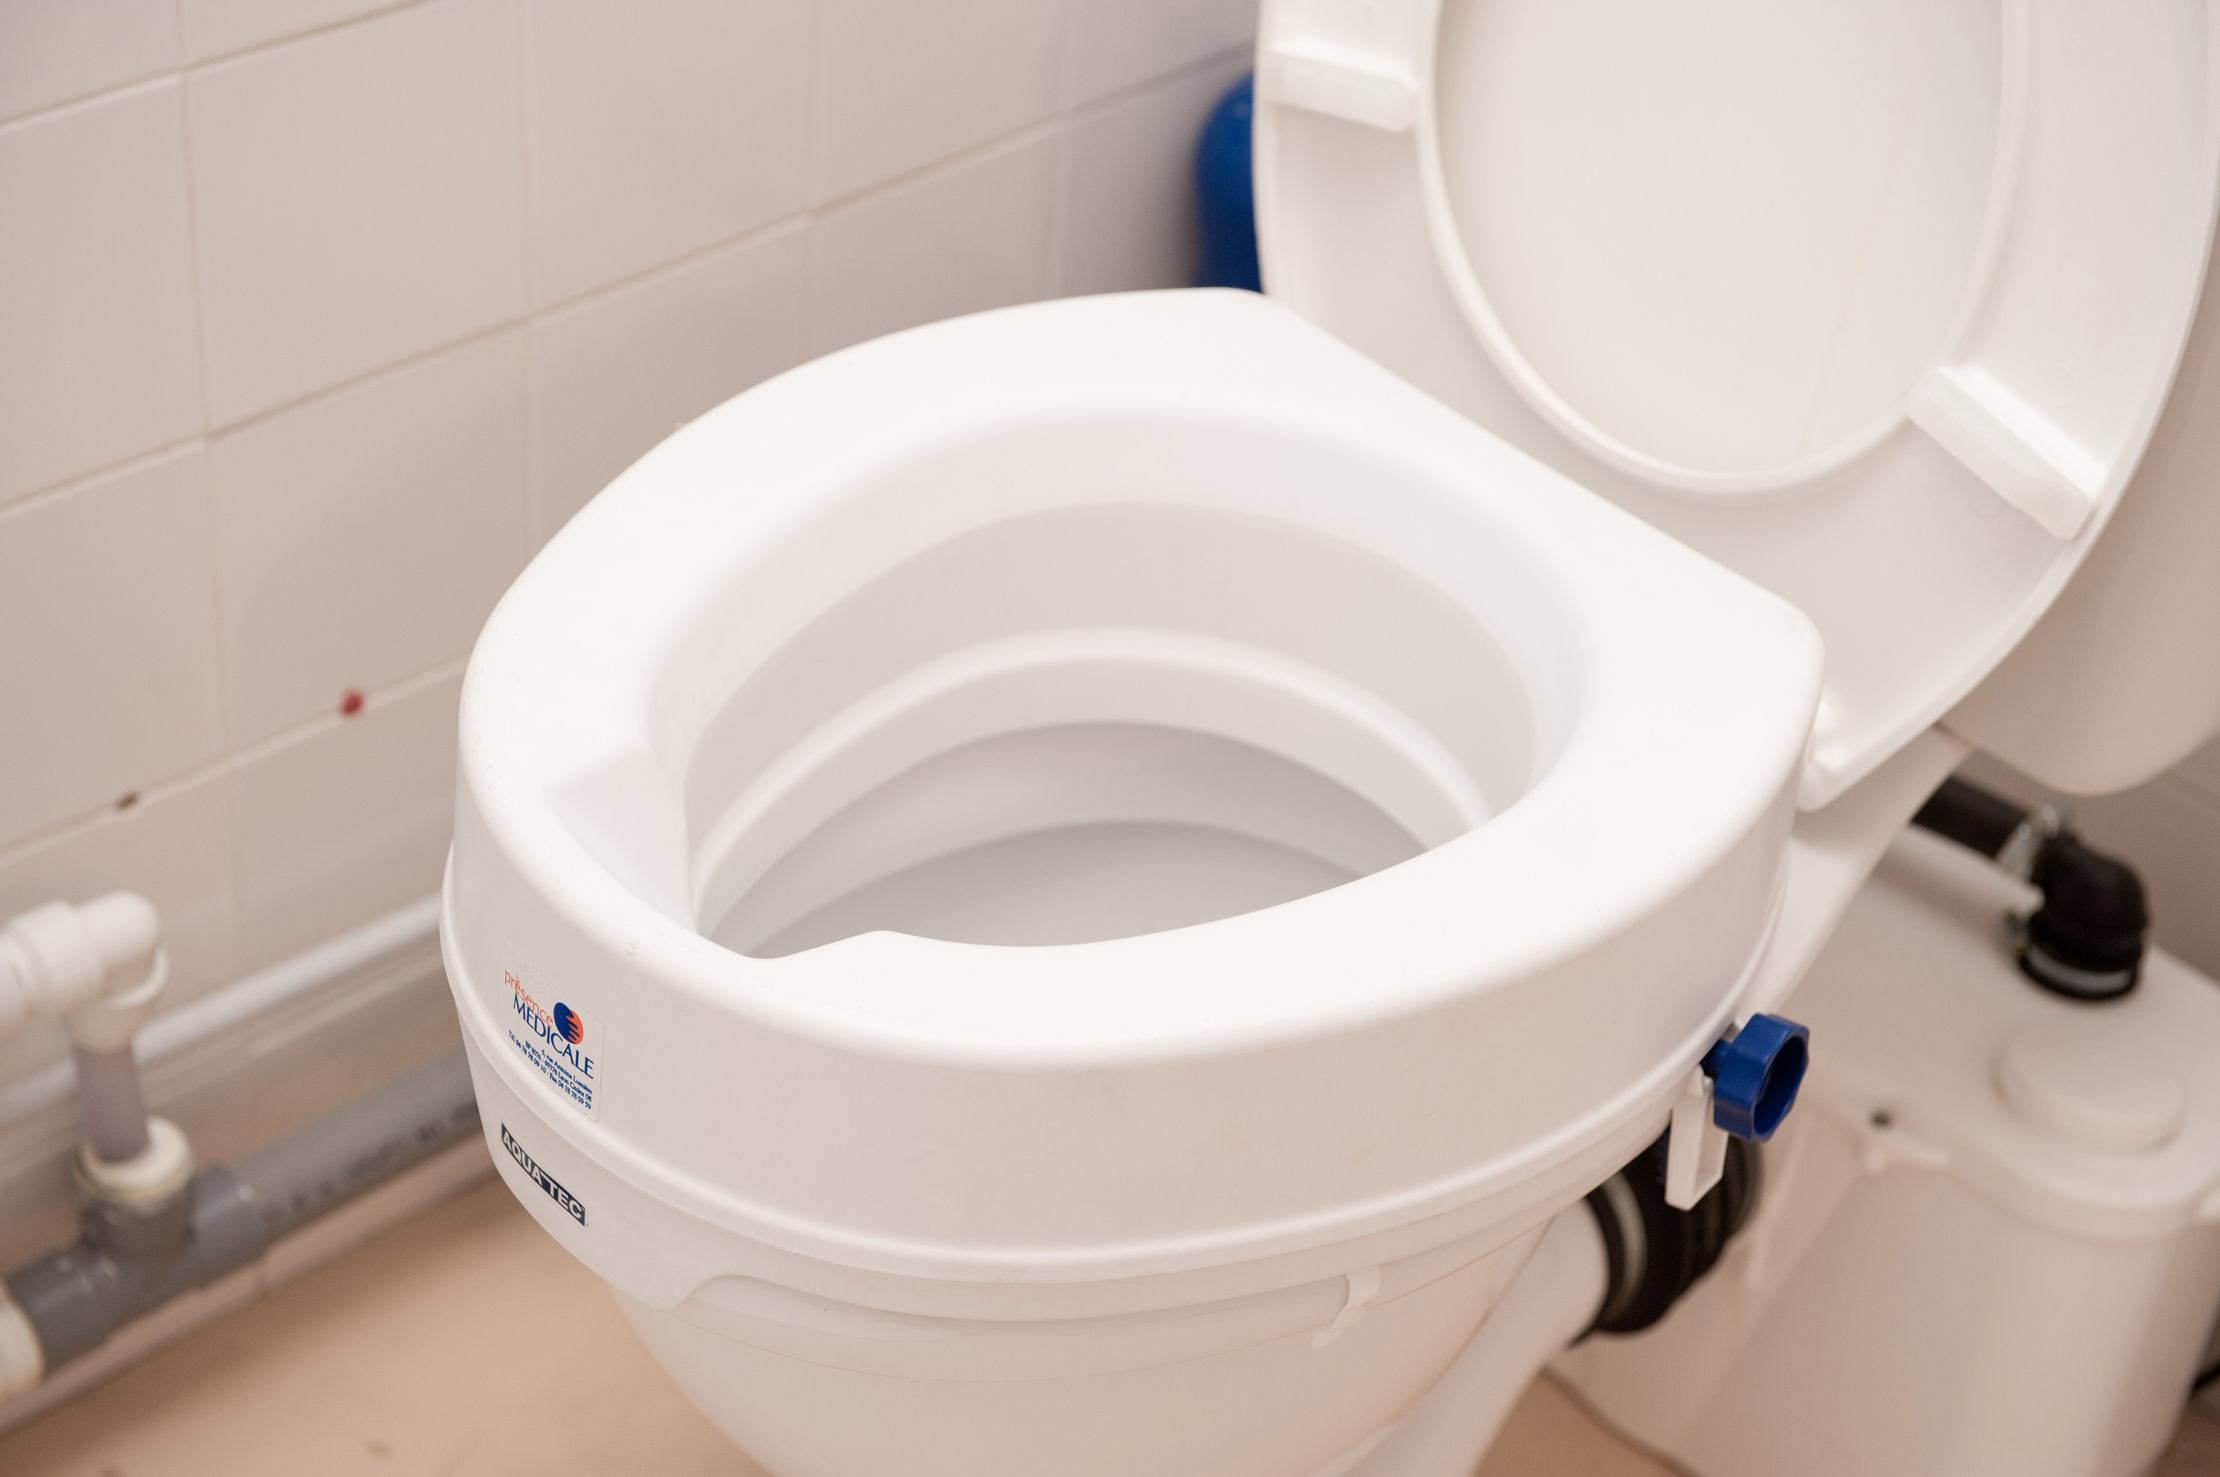 Rehausse WC Aquatec 90 avec ou sans couvercle